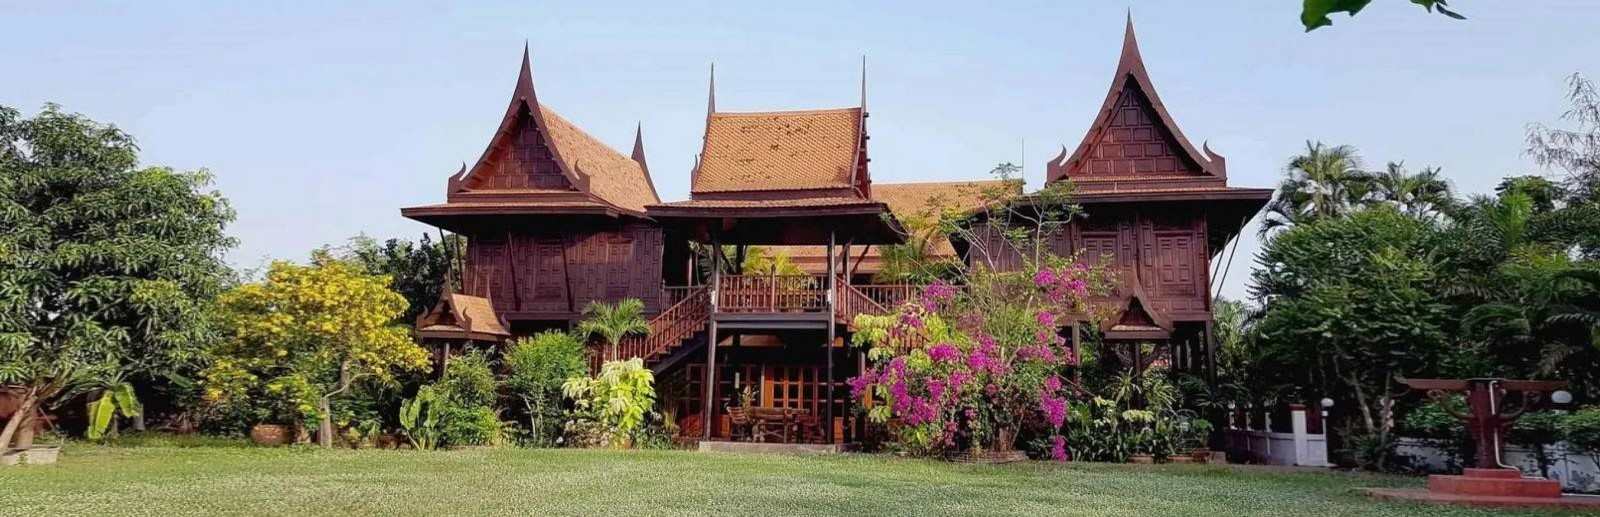 Les maisons traditionnelles thaïlandaises.jpg